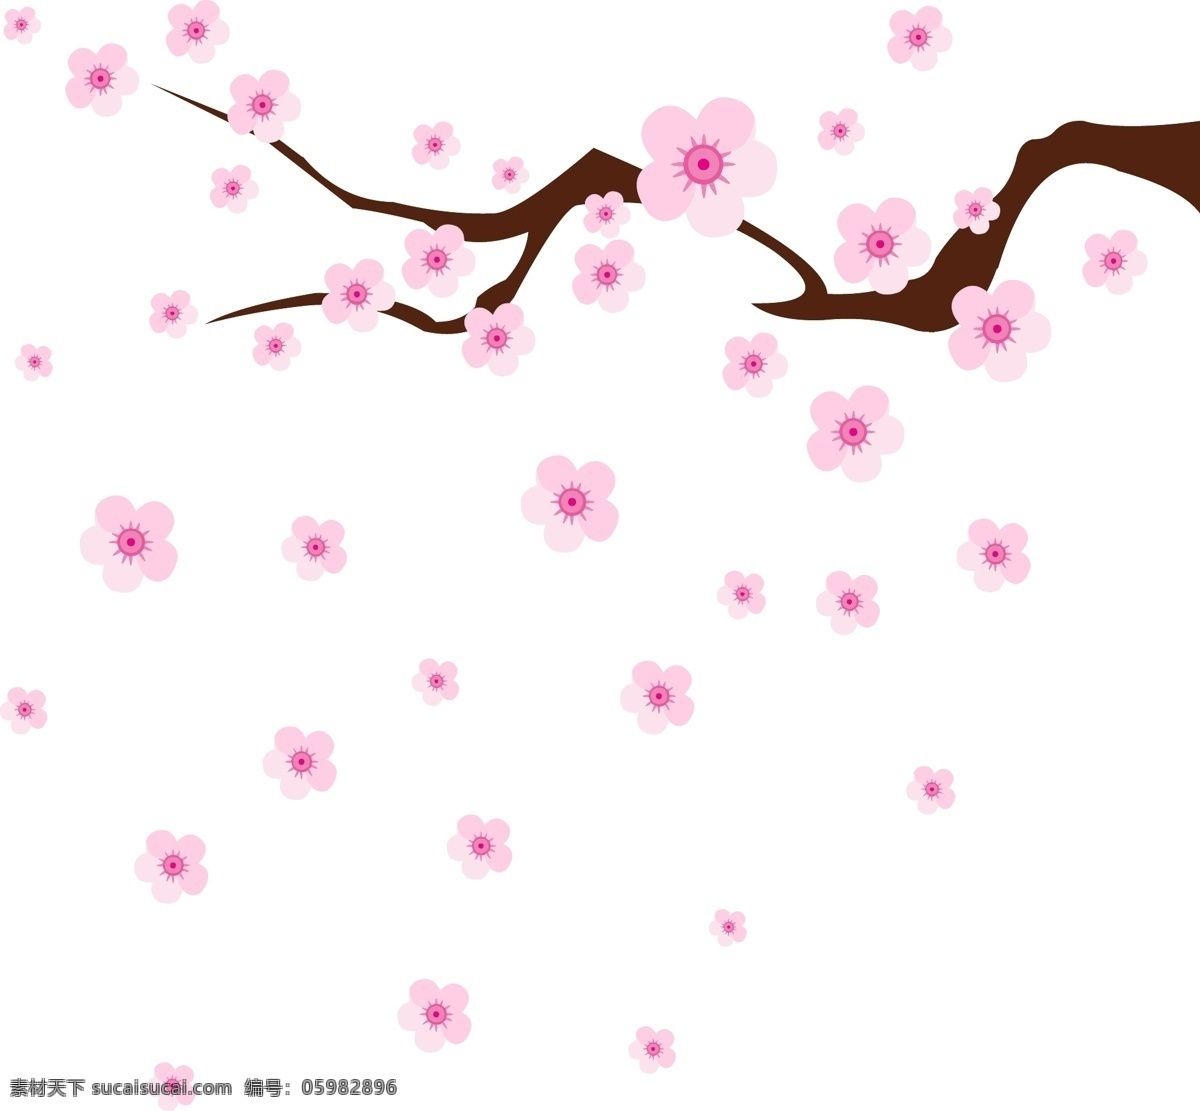 粉红 手绘 梅花 漂浮 植物 手绘植物 落花 花朵 手绘梅花